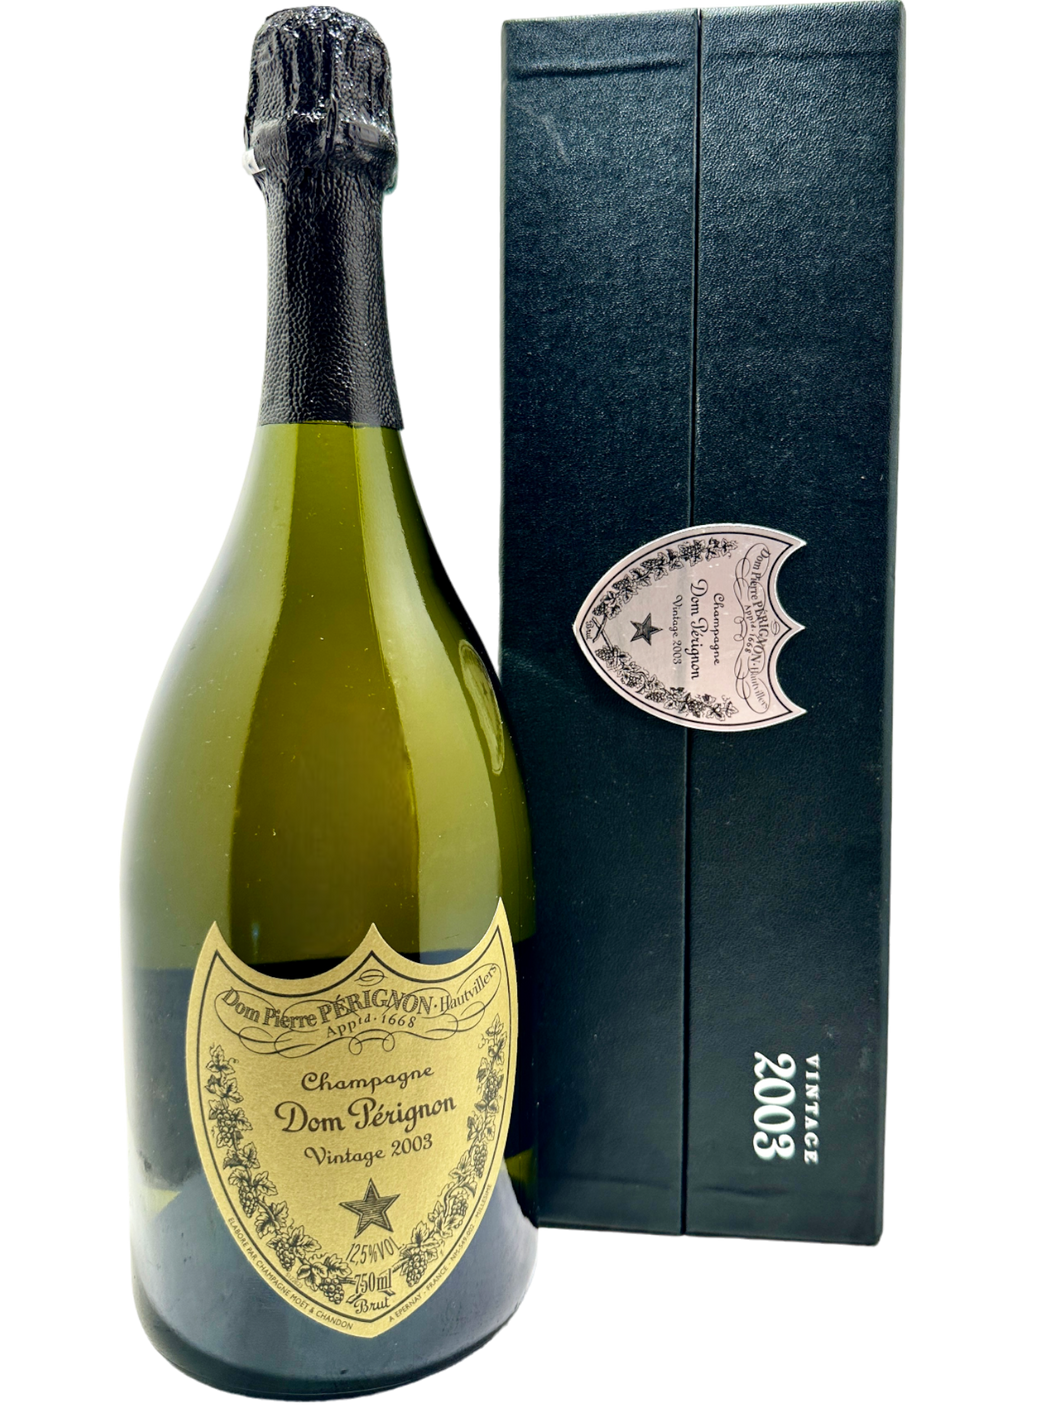 Champagne Dom Perignon Vintage 2003